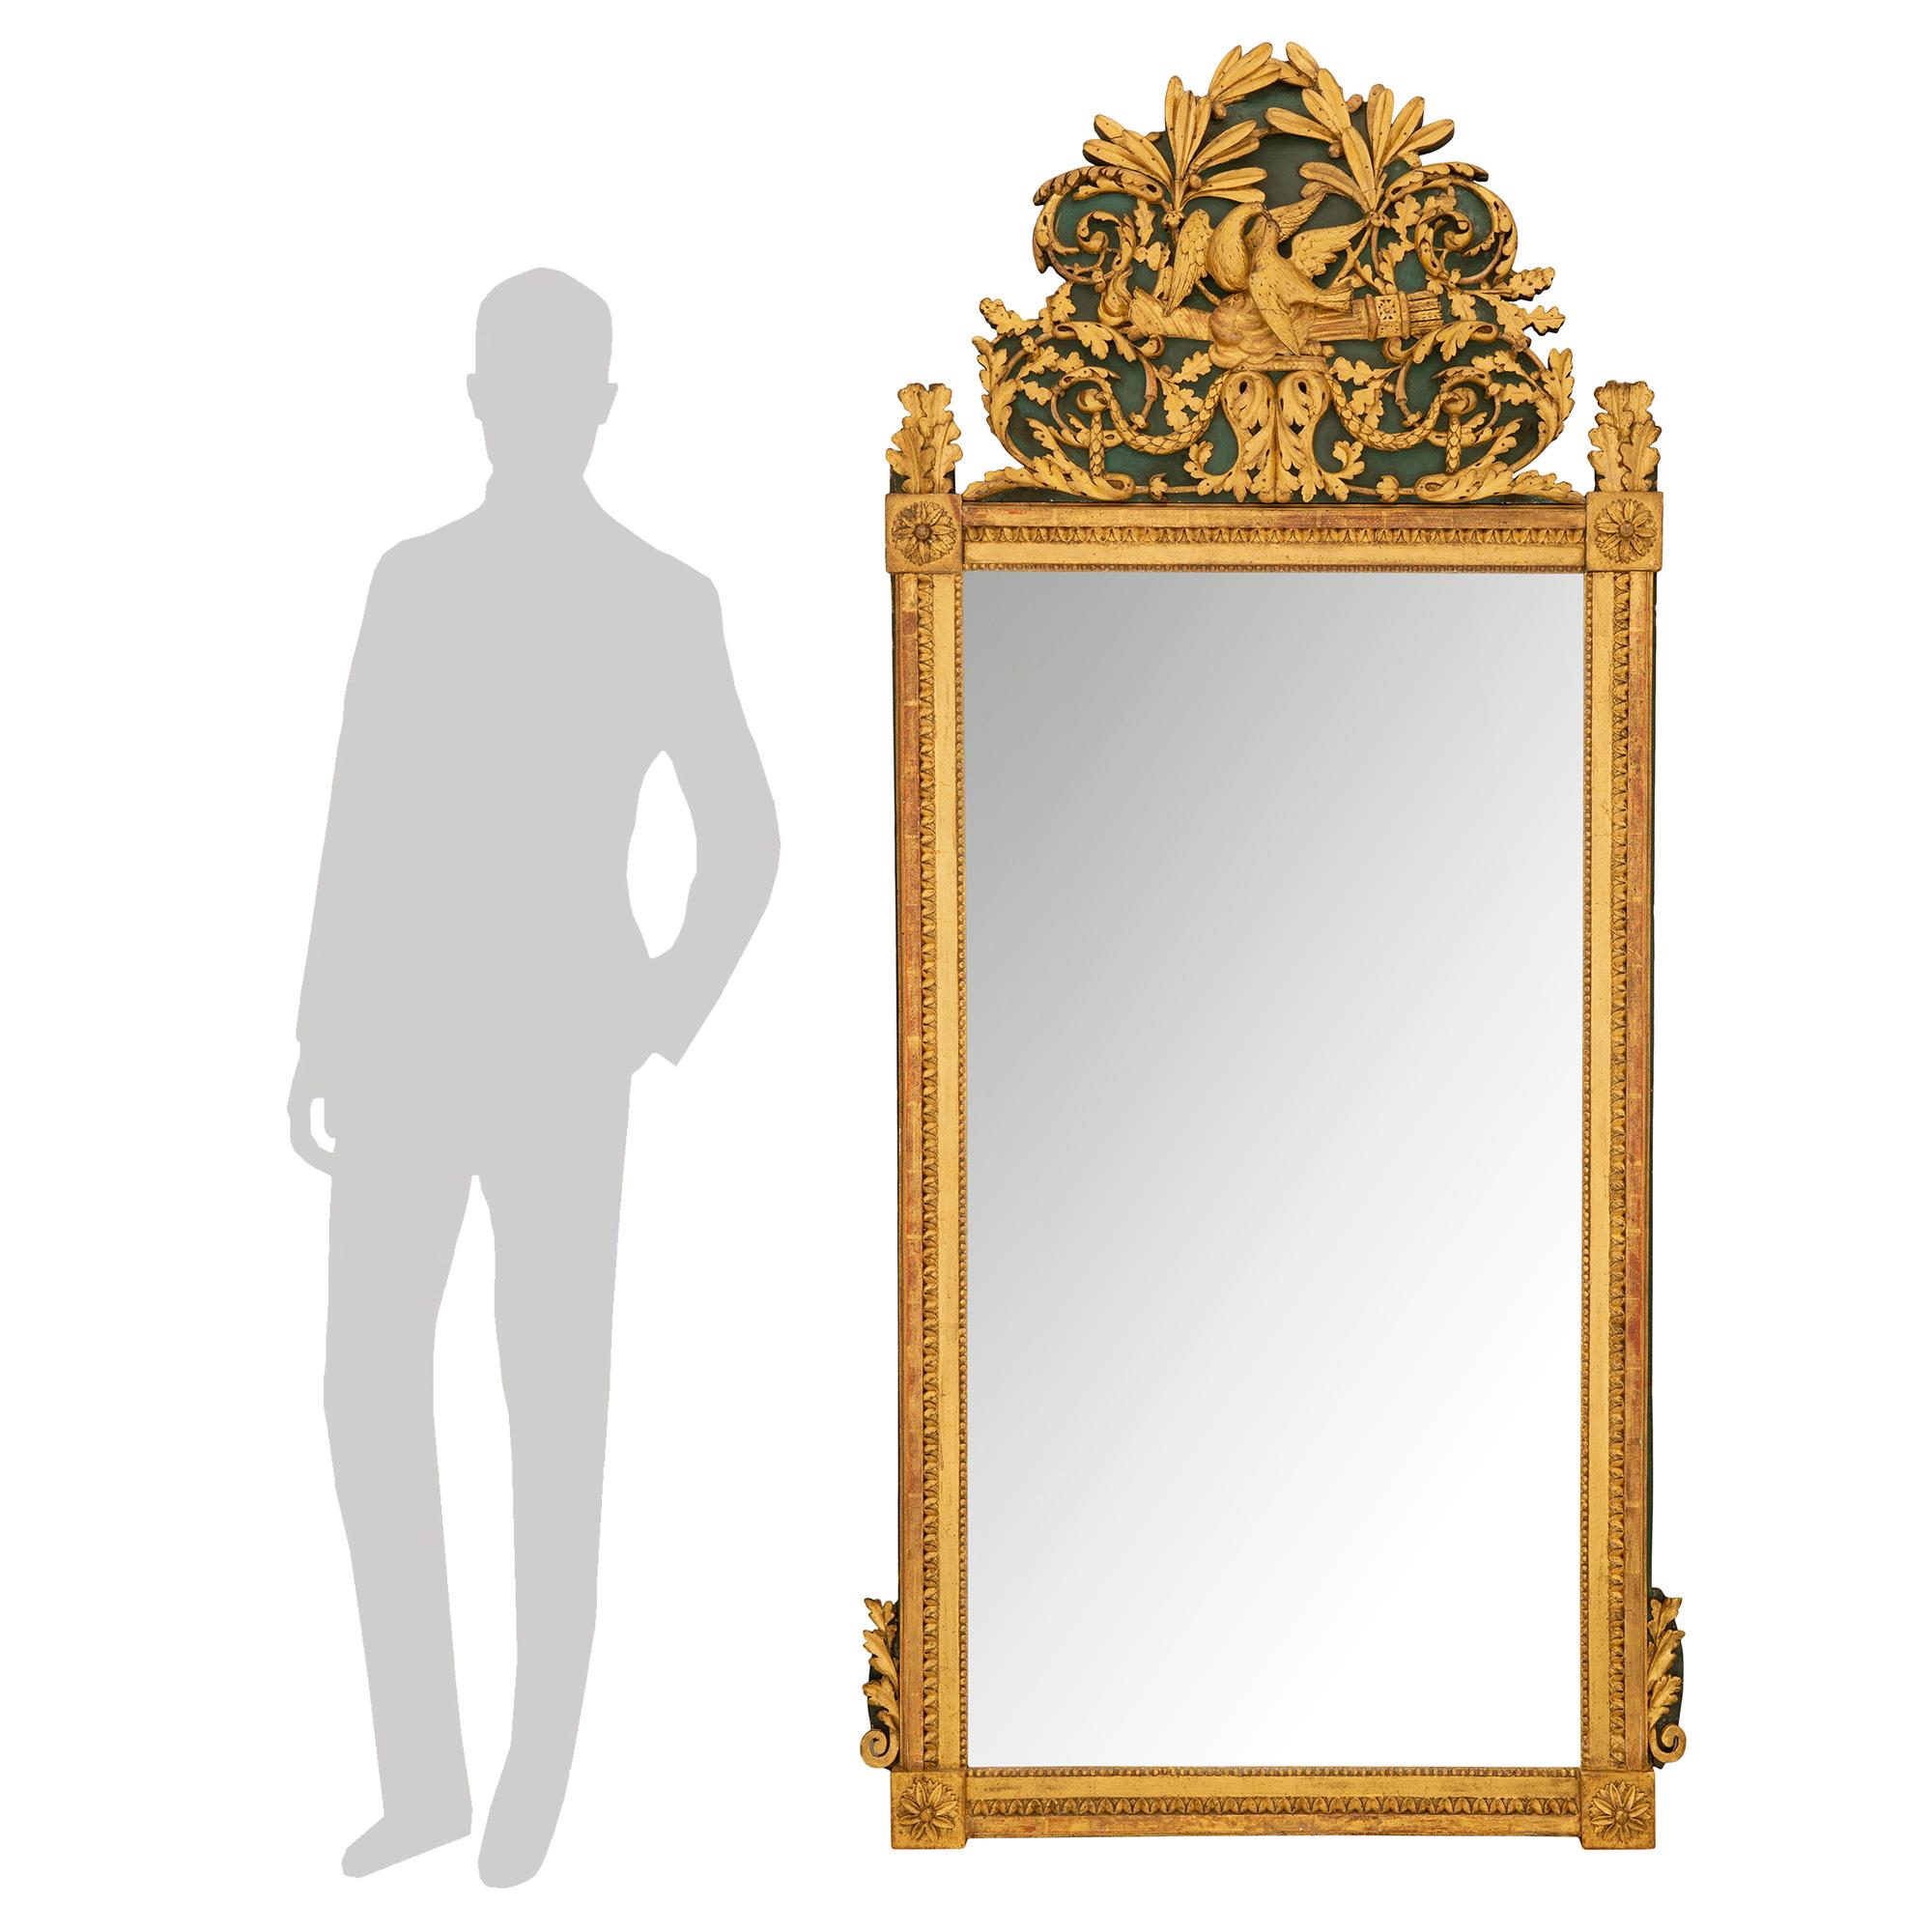 Eine sehr elegante und reich geschnitzte Französisch 19. Jahrhundert Louis XVI st. Vergoldung und Waldgrün Spiegel. Der originale Spiegel ist von einer fein geschnitzten Umrandung mit einem hübschen gesprenkelten und perlenartigen Muster umrahmt. An